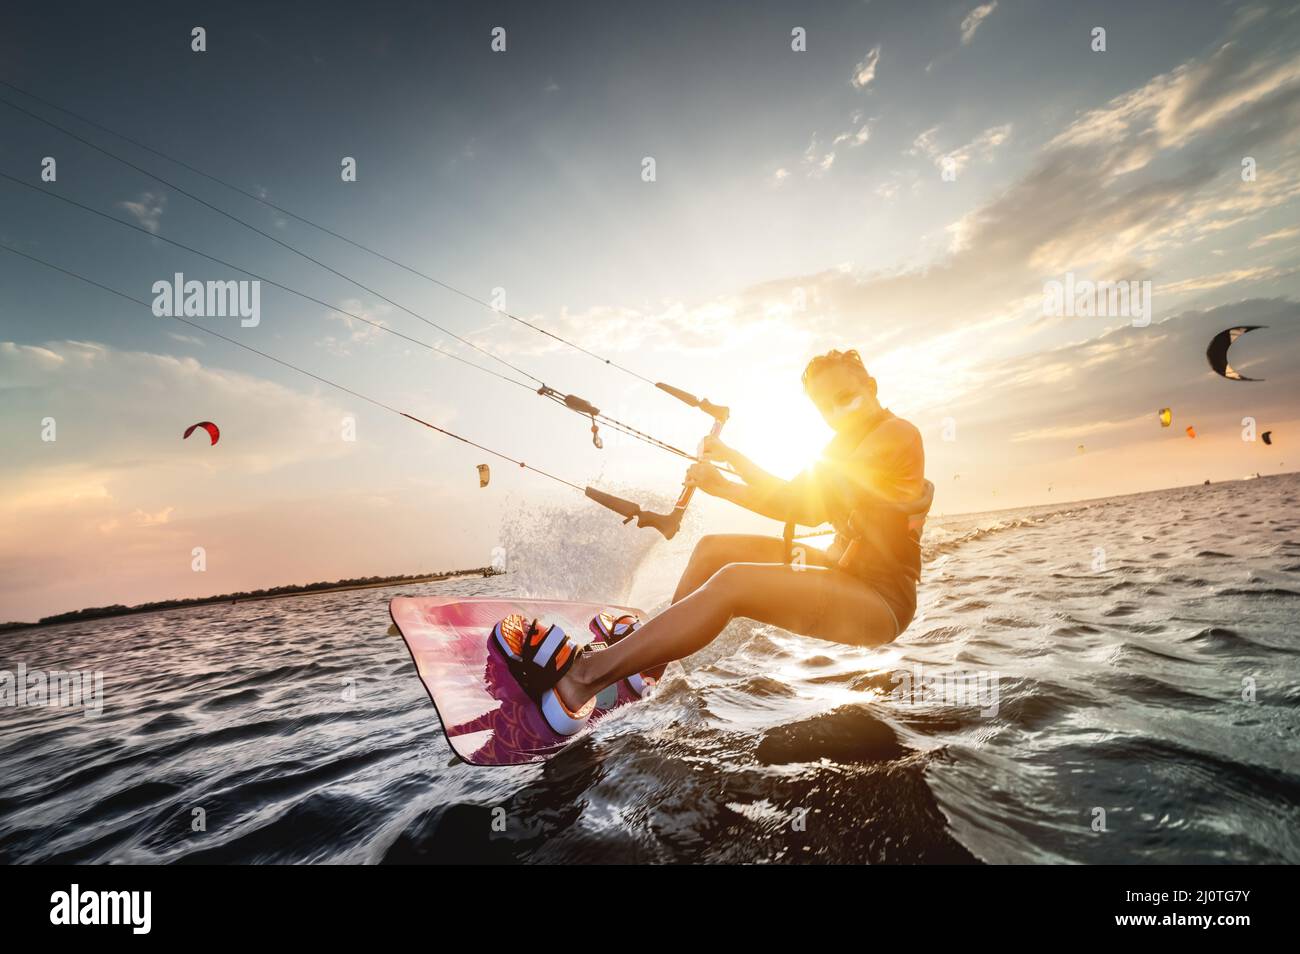 Die professionelle Kite-Surferin Frau reitet auf einem Brett mit einer Planke in den Händen auf einem leman See mit Meerwasser bei Sonnenuntergang. Wasserspritzer Stockfoto